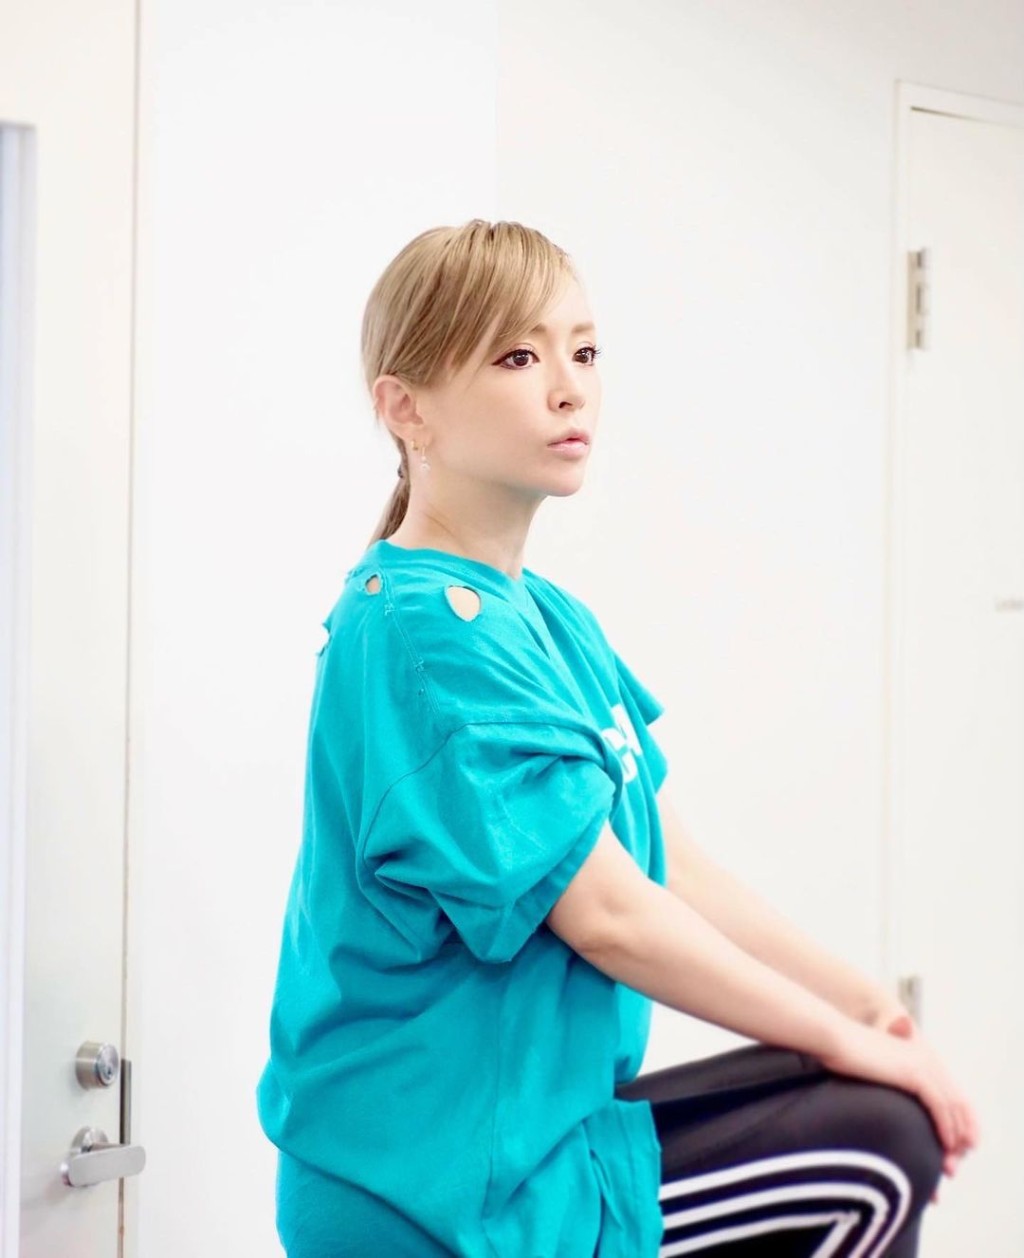 日本天后滨崎步几年前被爆恋上细她20岁的小鲜肉舞蹈员荒木骏平。